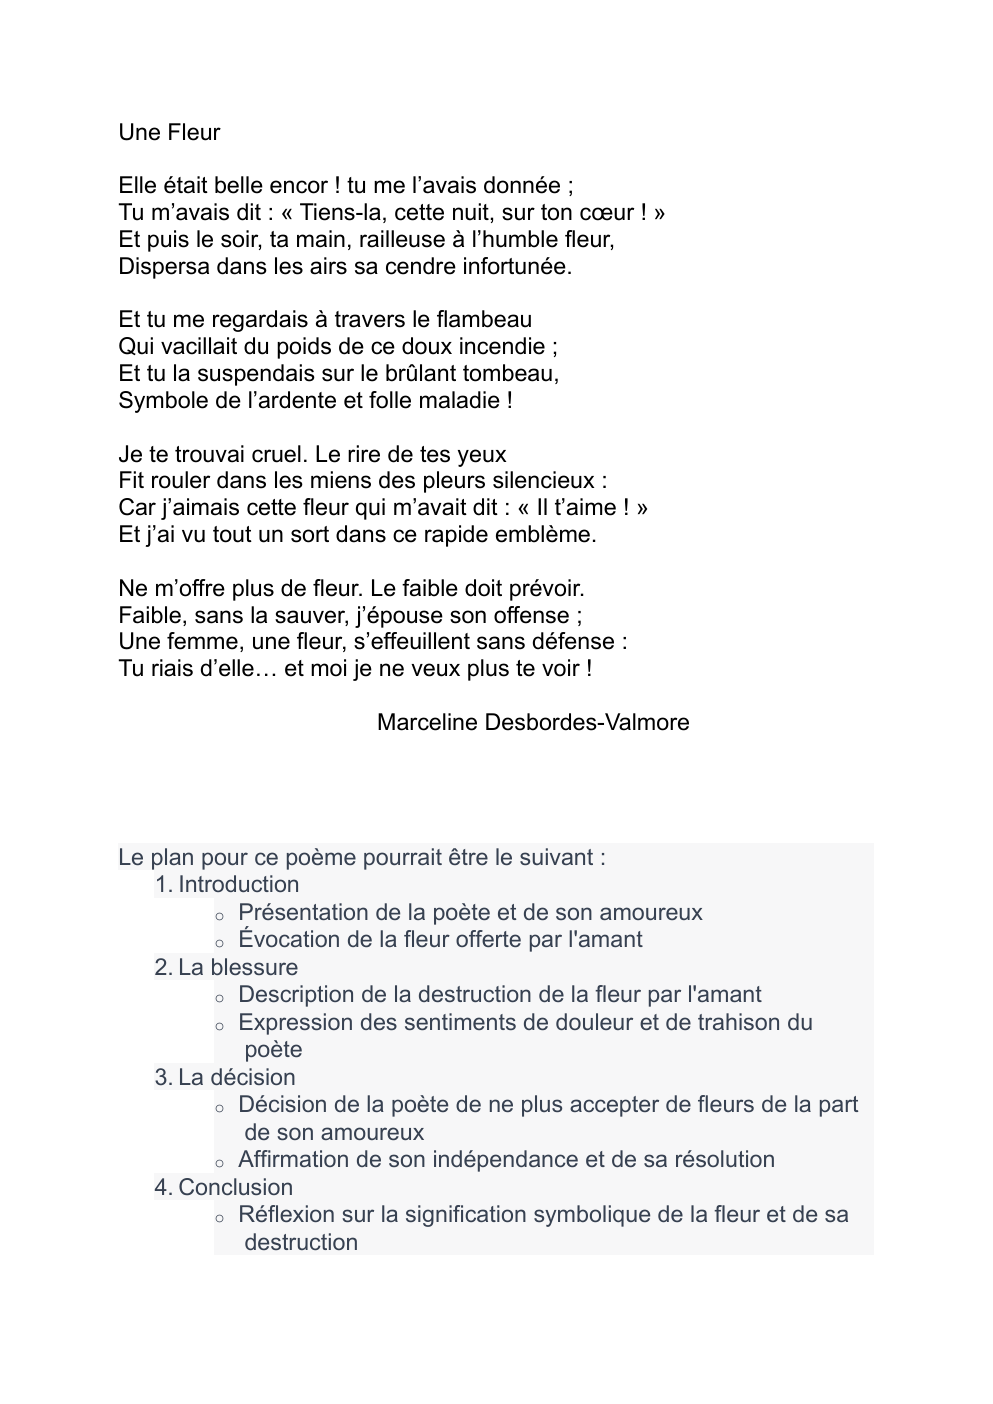 Prévisualisation du document Commentaire Une fleur de Marceline Desbordes-Valmore